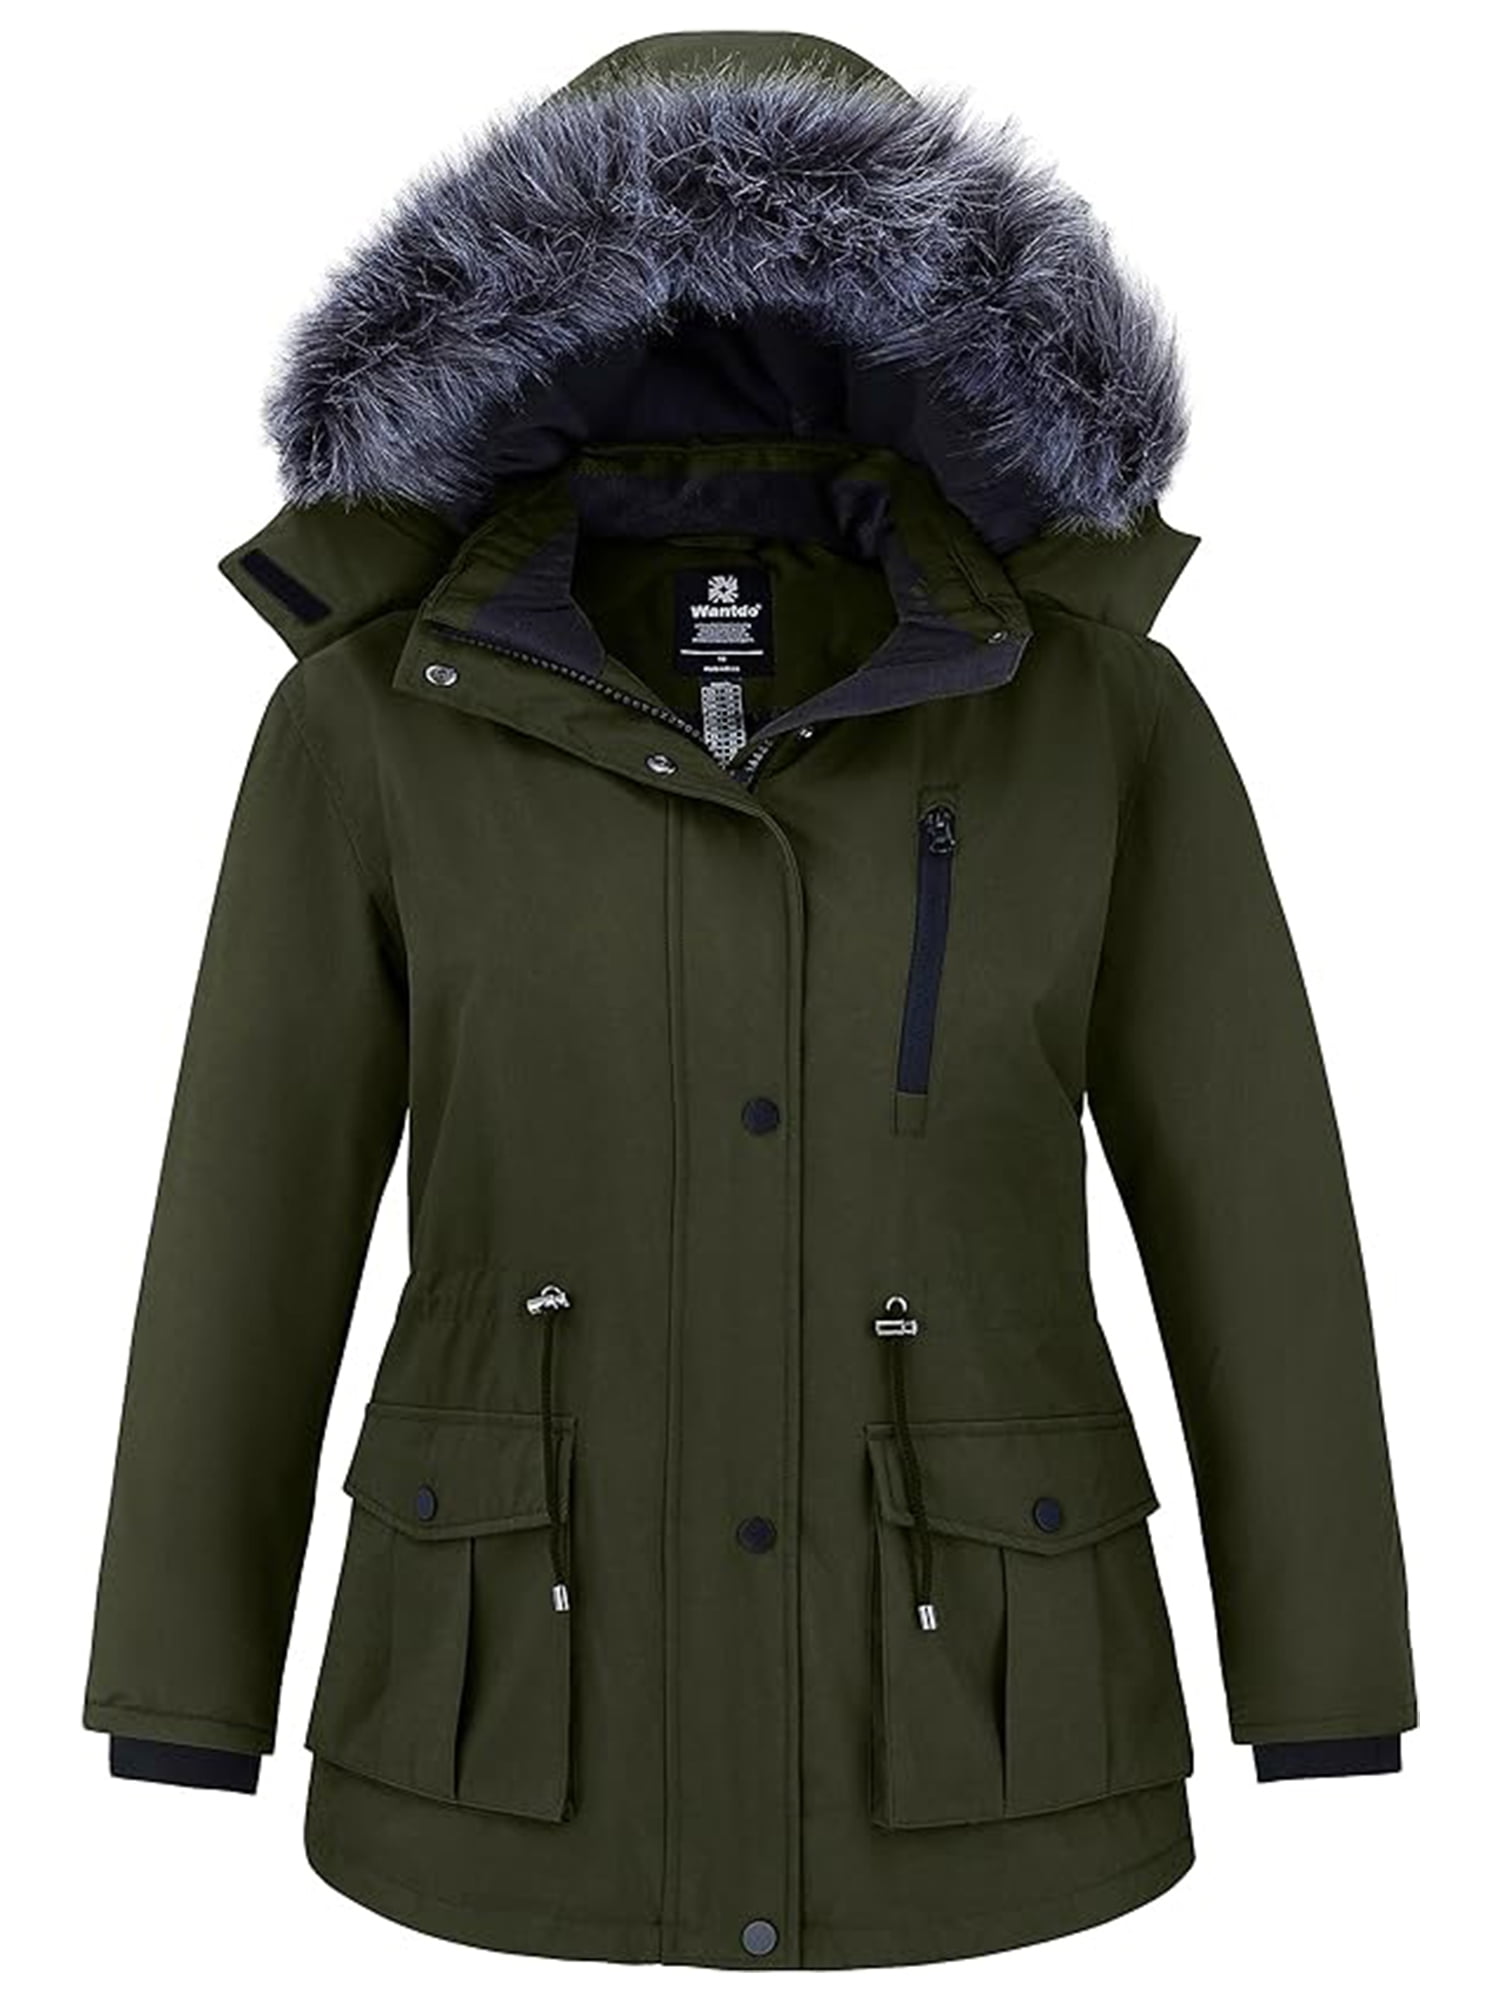 Wantdo Plus Size Winter Coat for Women Puffer Jacket Waterproof Parka ...